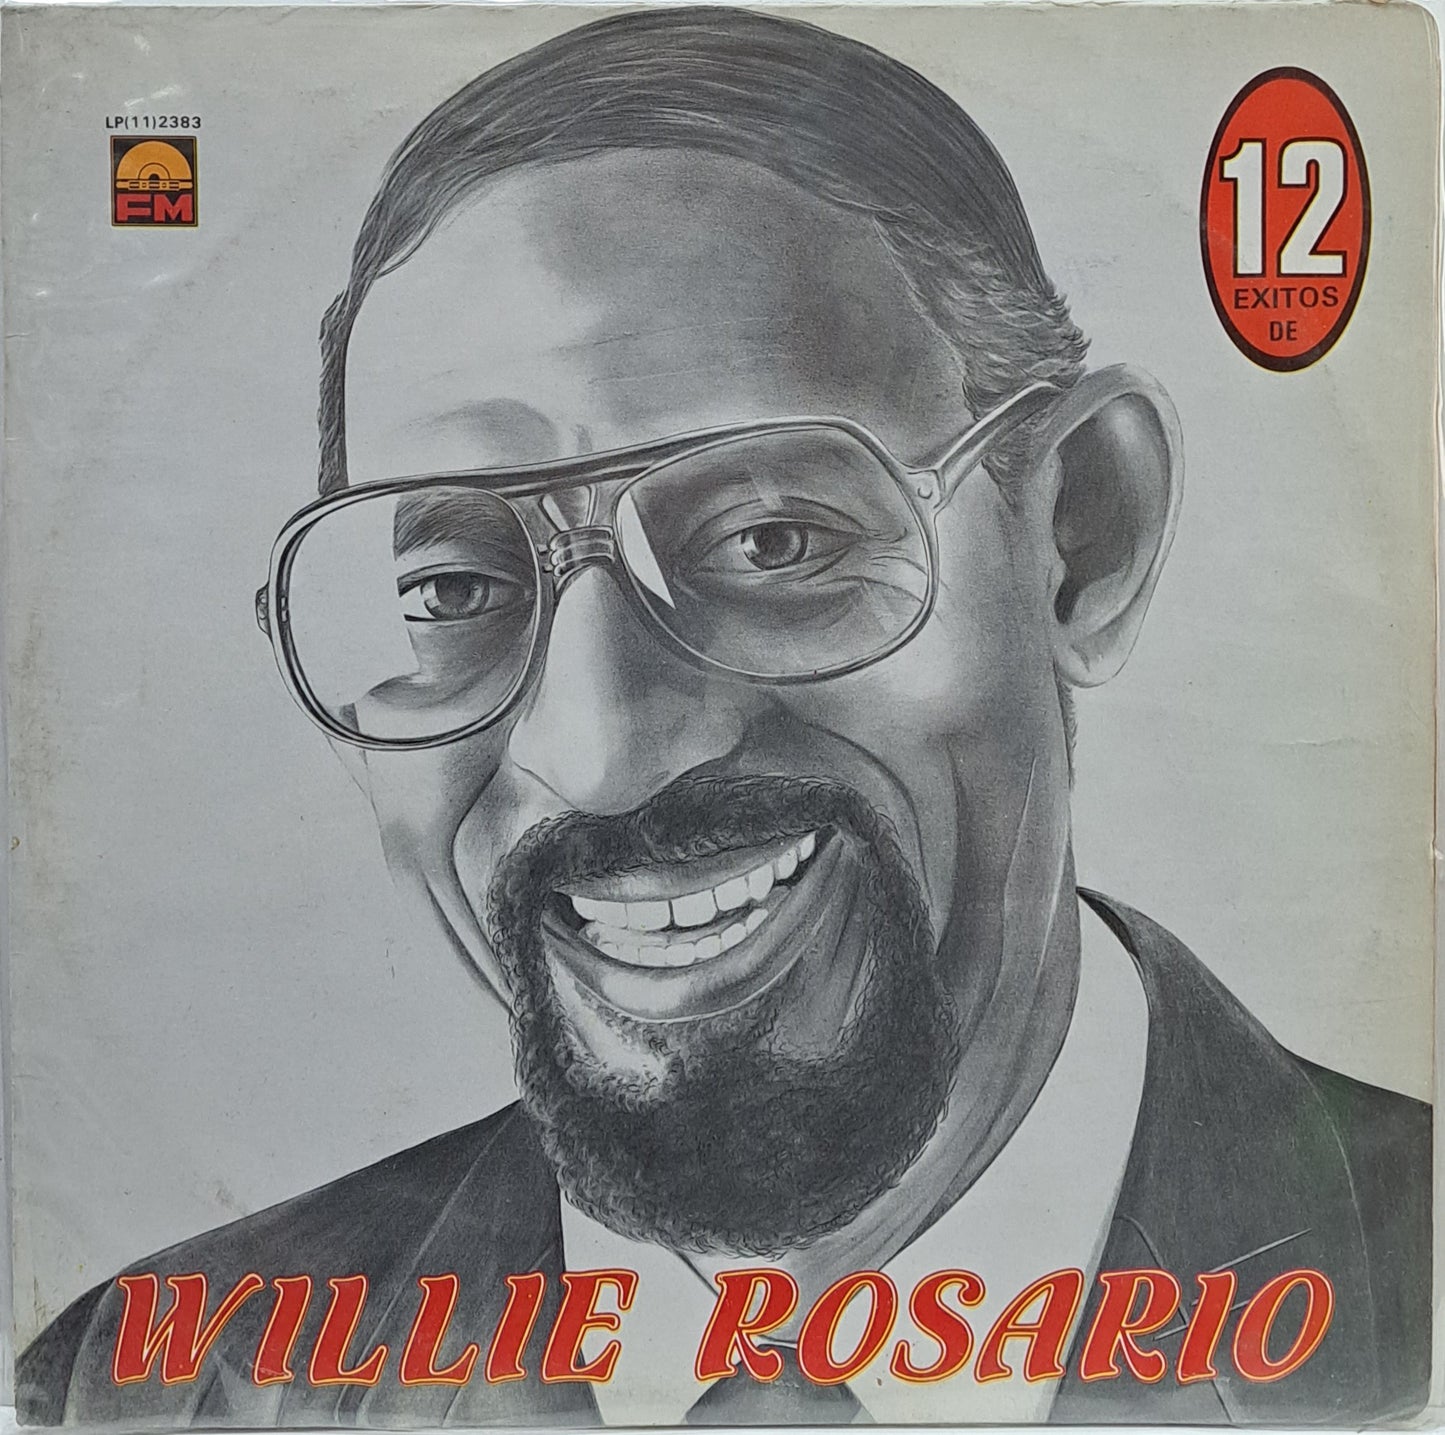 WILLIE ROSARIO - 12 EXITOS DE LP